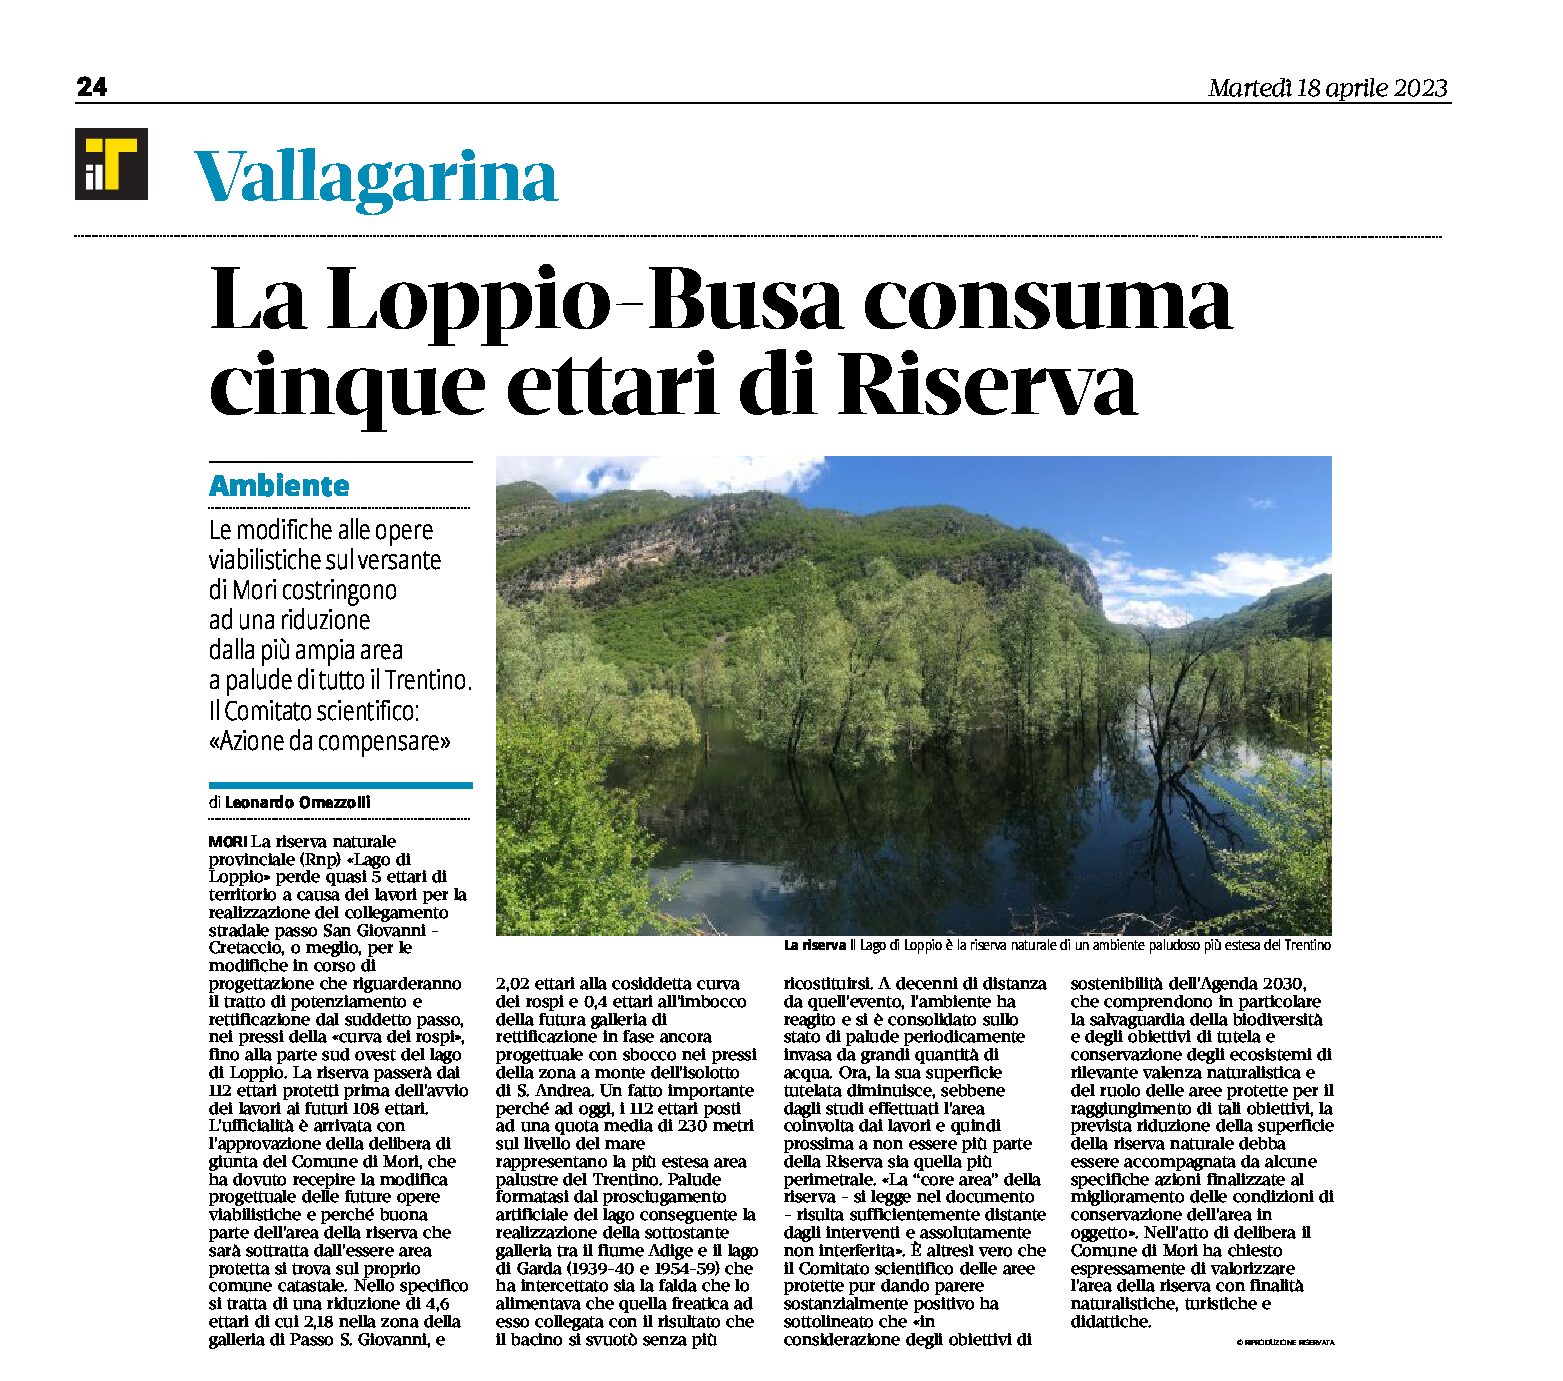 Vallagarina, ambiente: la Loppio-Busa consuma cinque ettari di Riserva